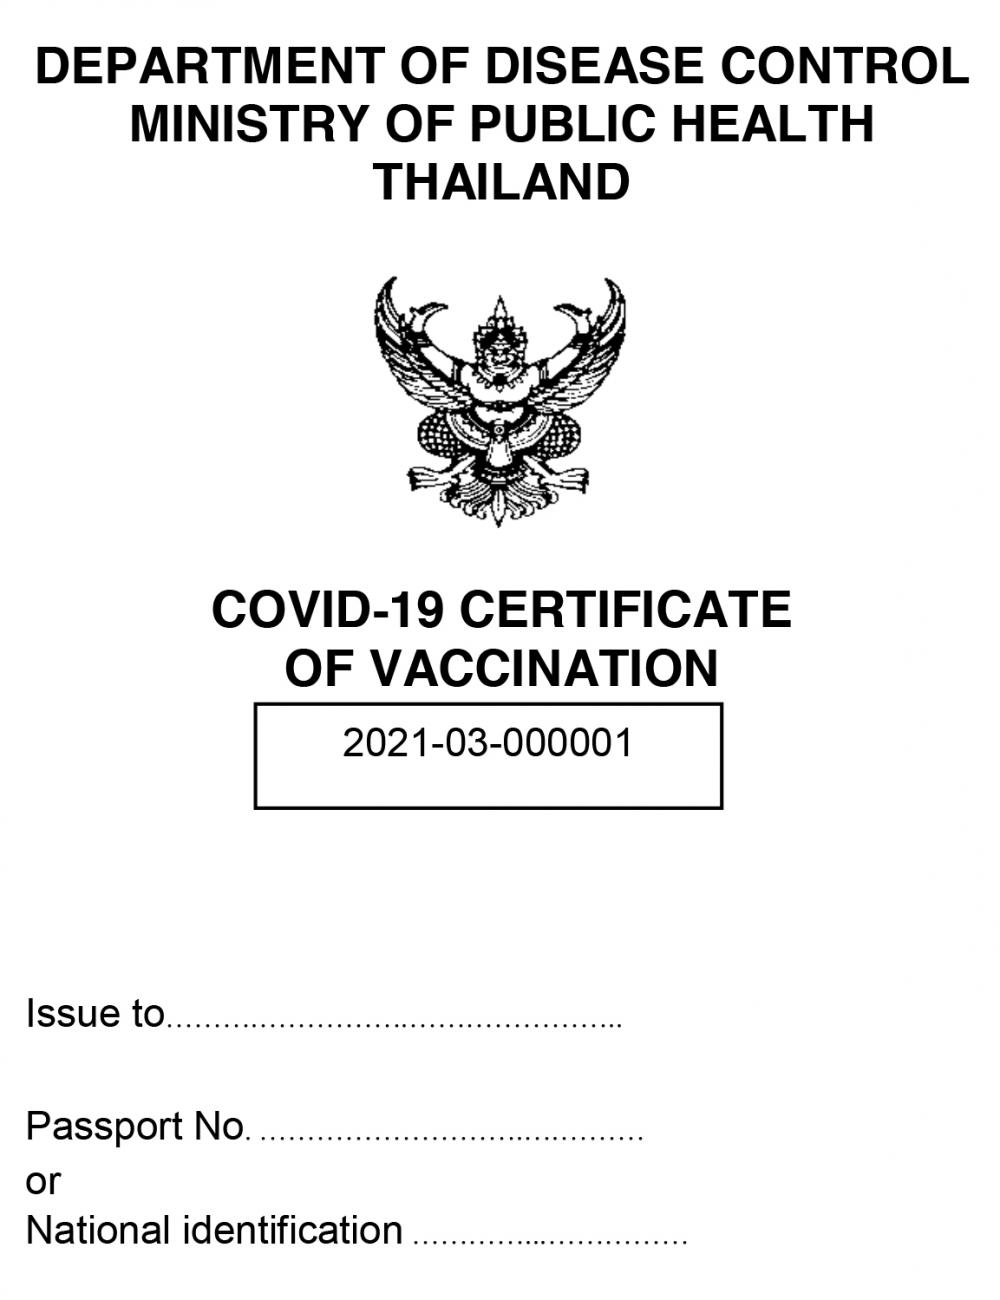 Thai vaccine passport